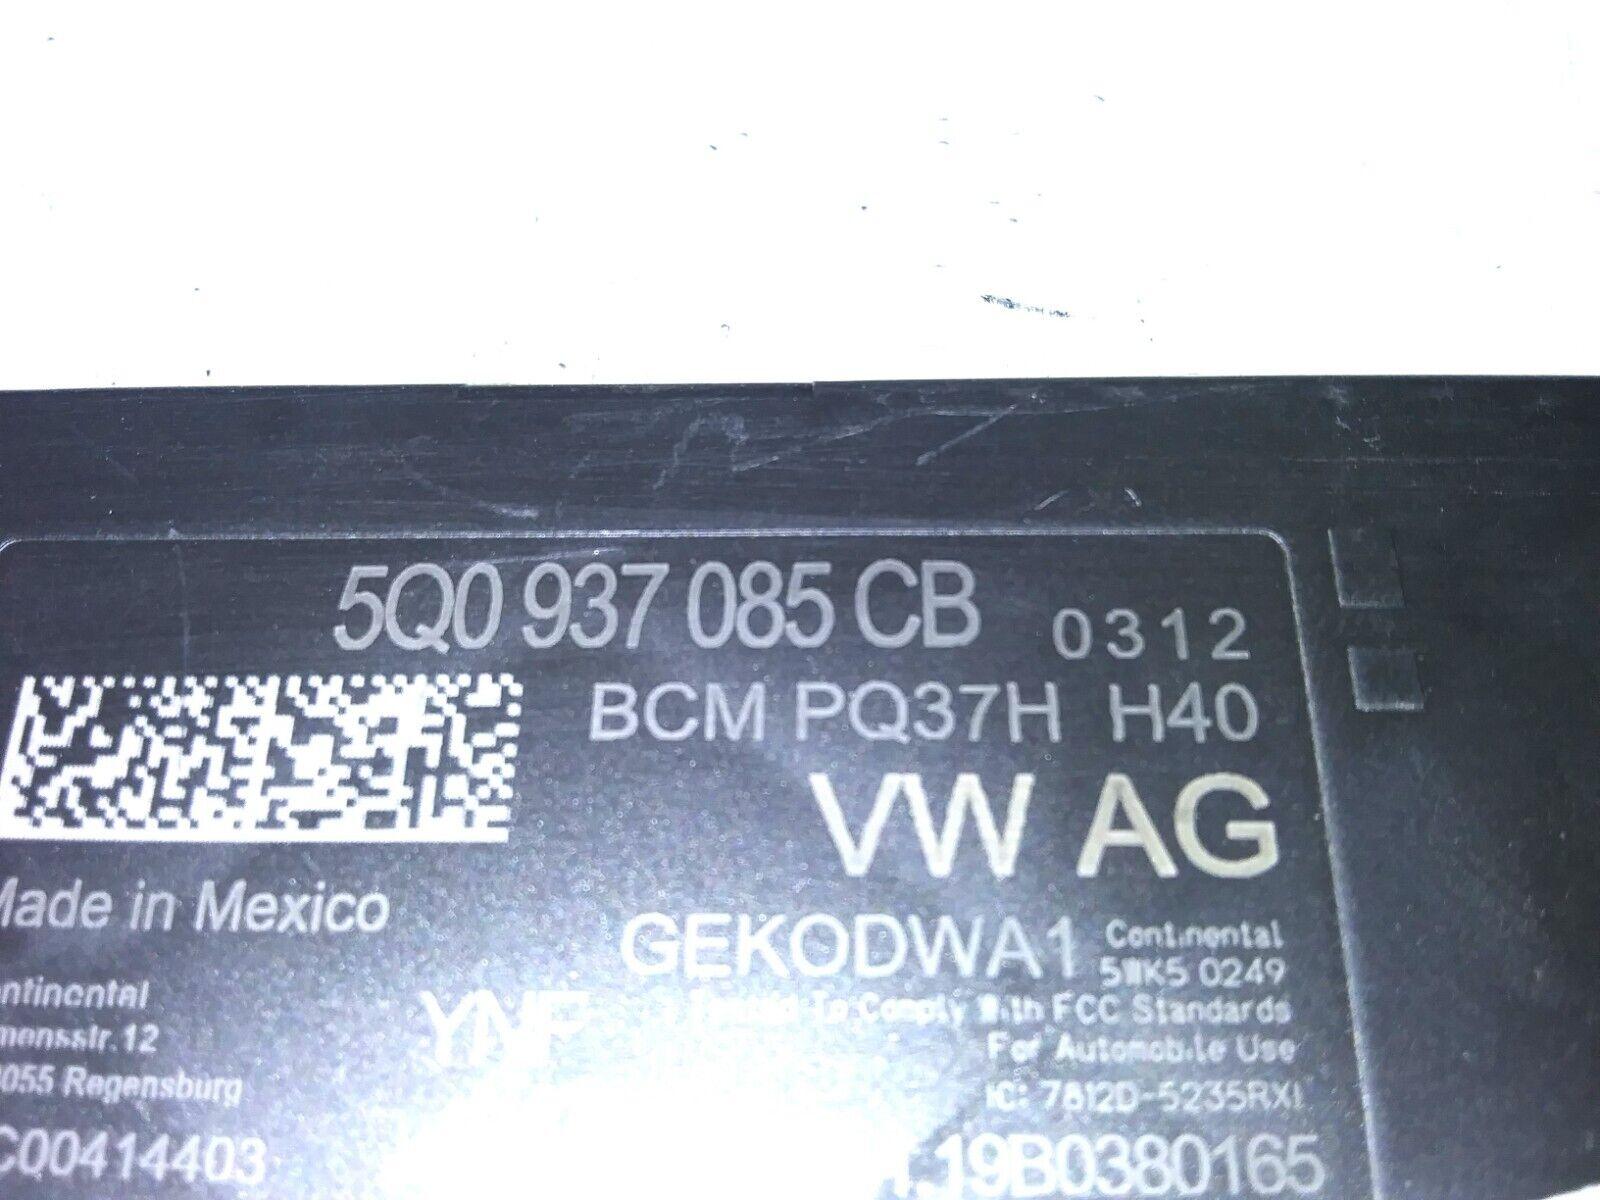 2020 Audi A3 bcm body control module 5Q0 937 085 CB - Swan Auto